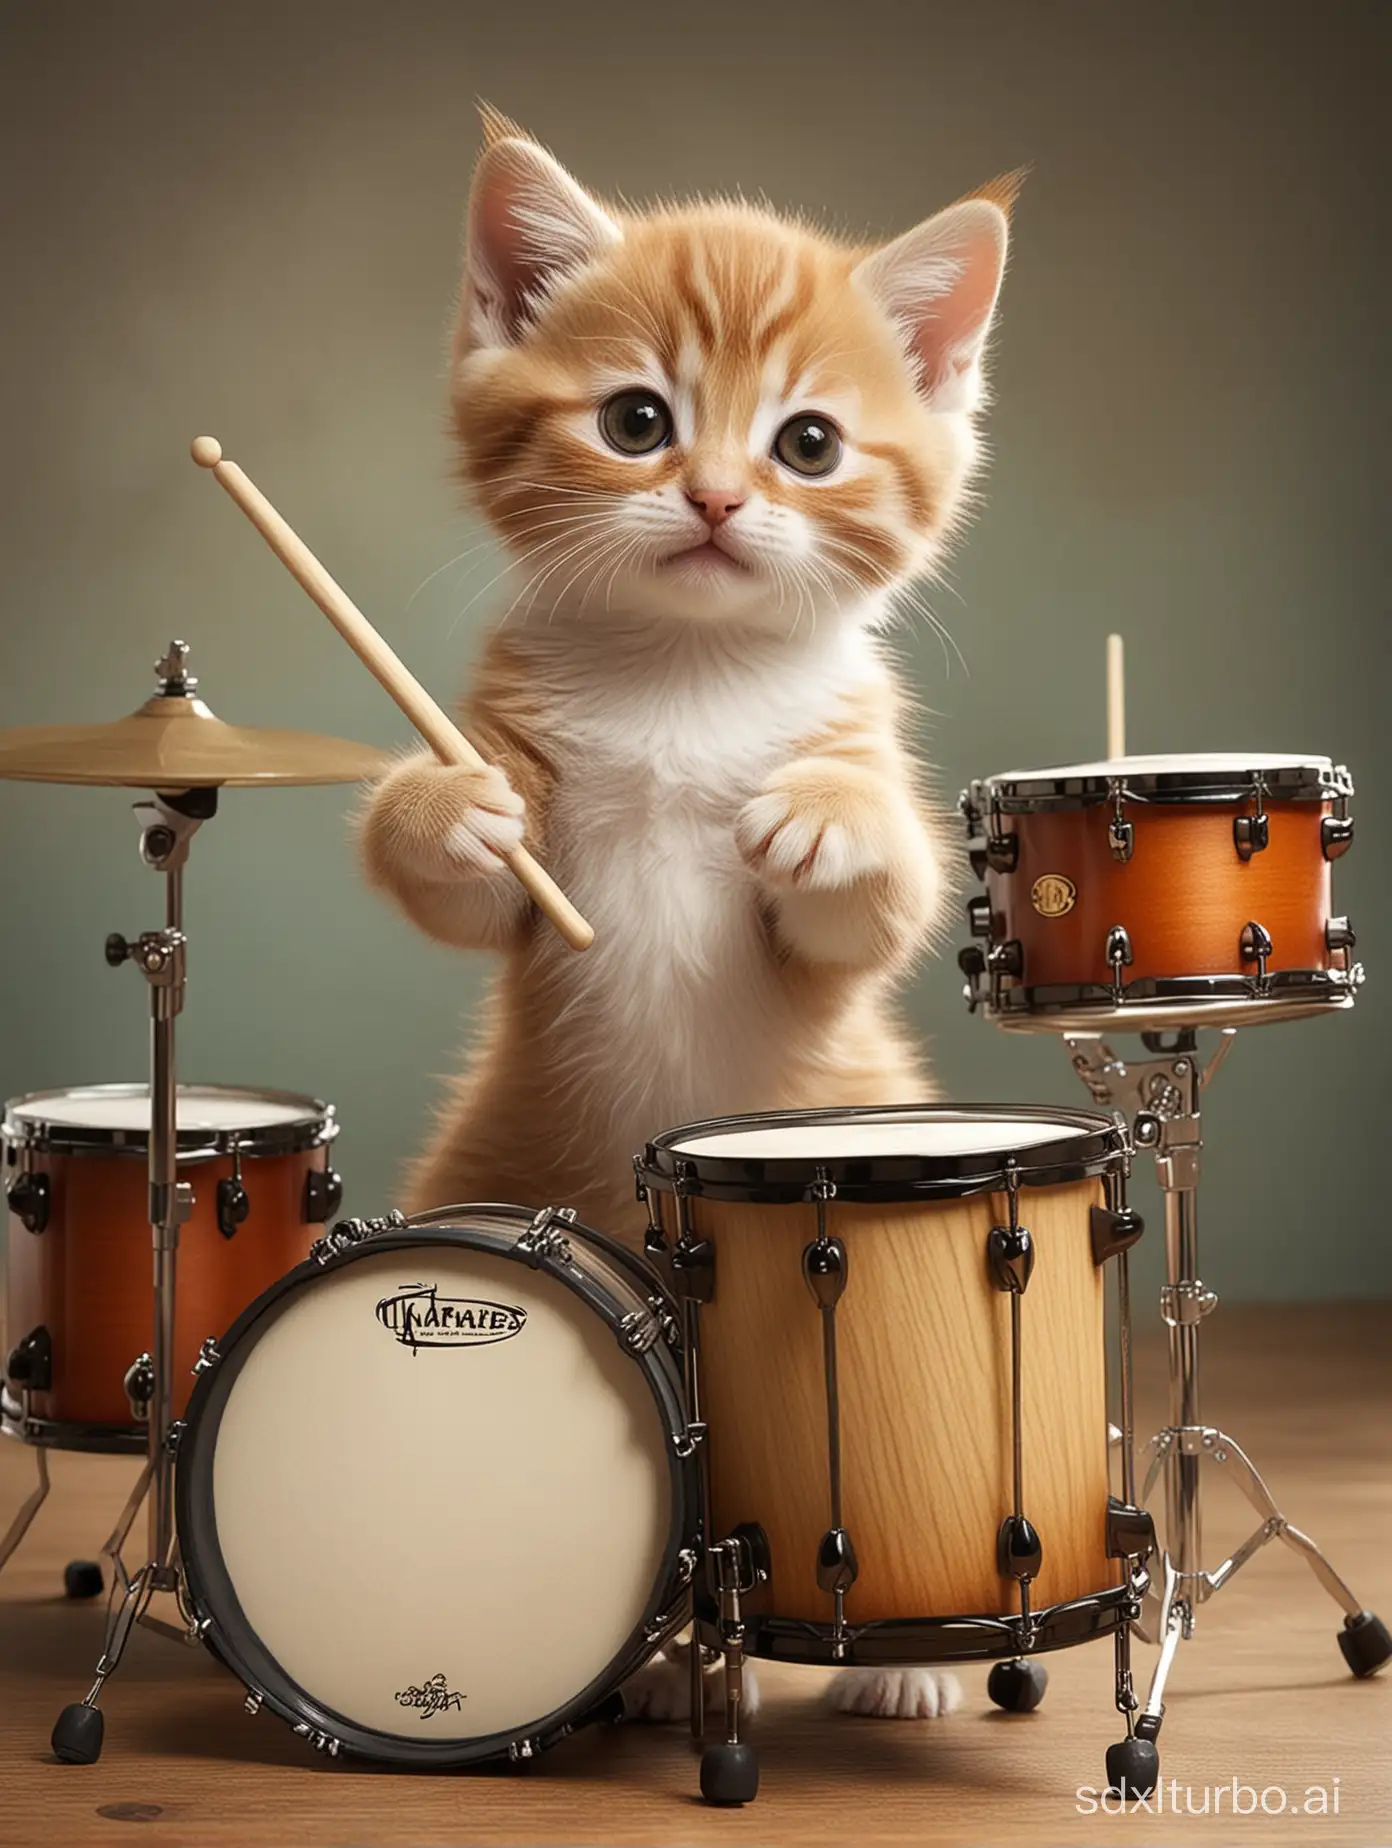 ANTHROPOMORPHIC KITTEN playing drums